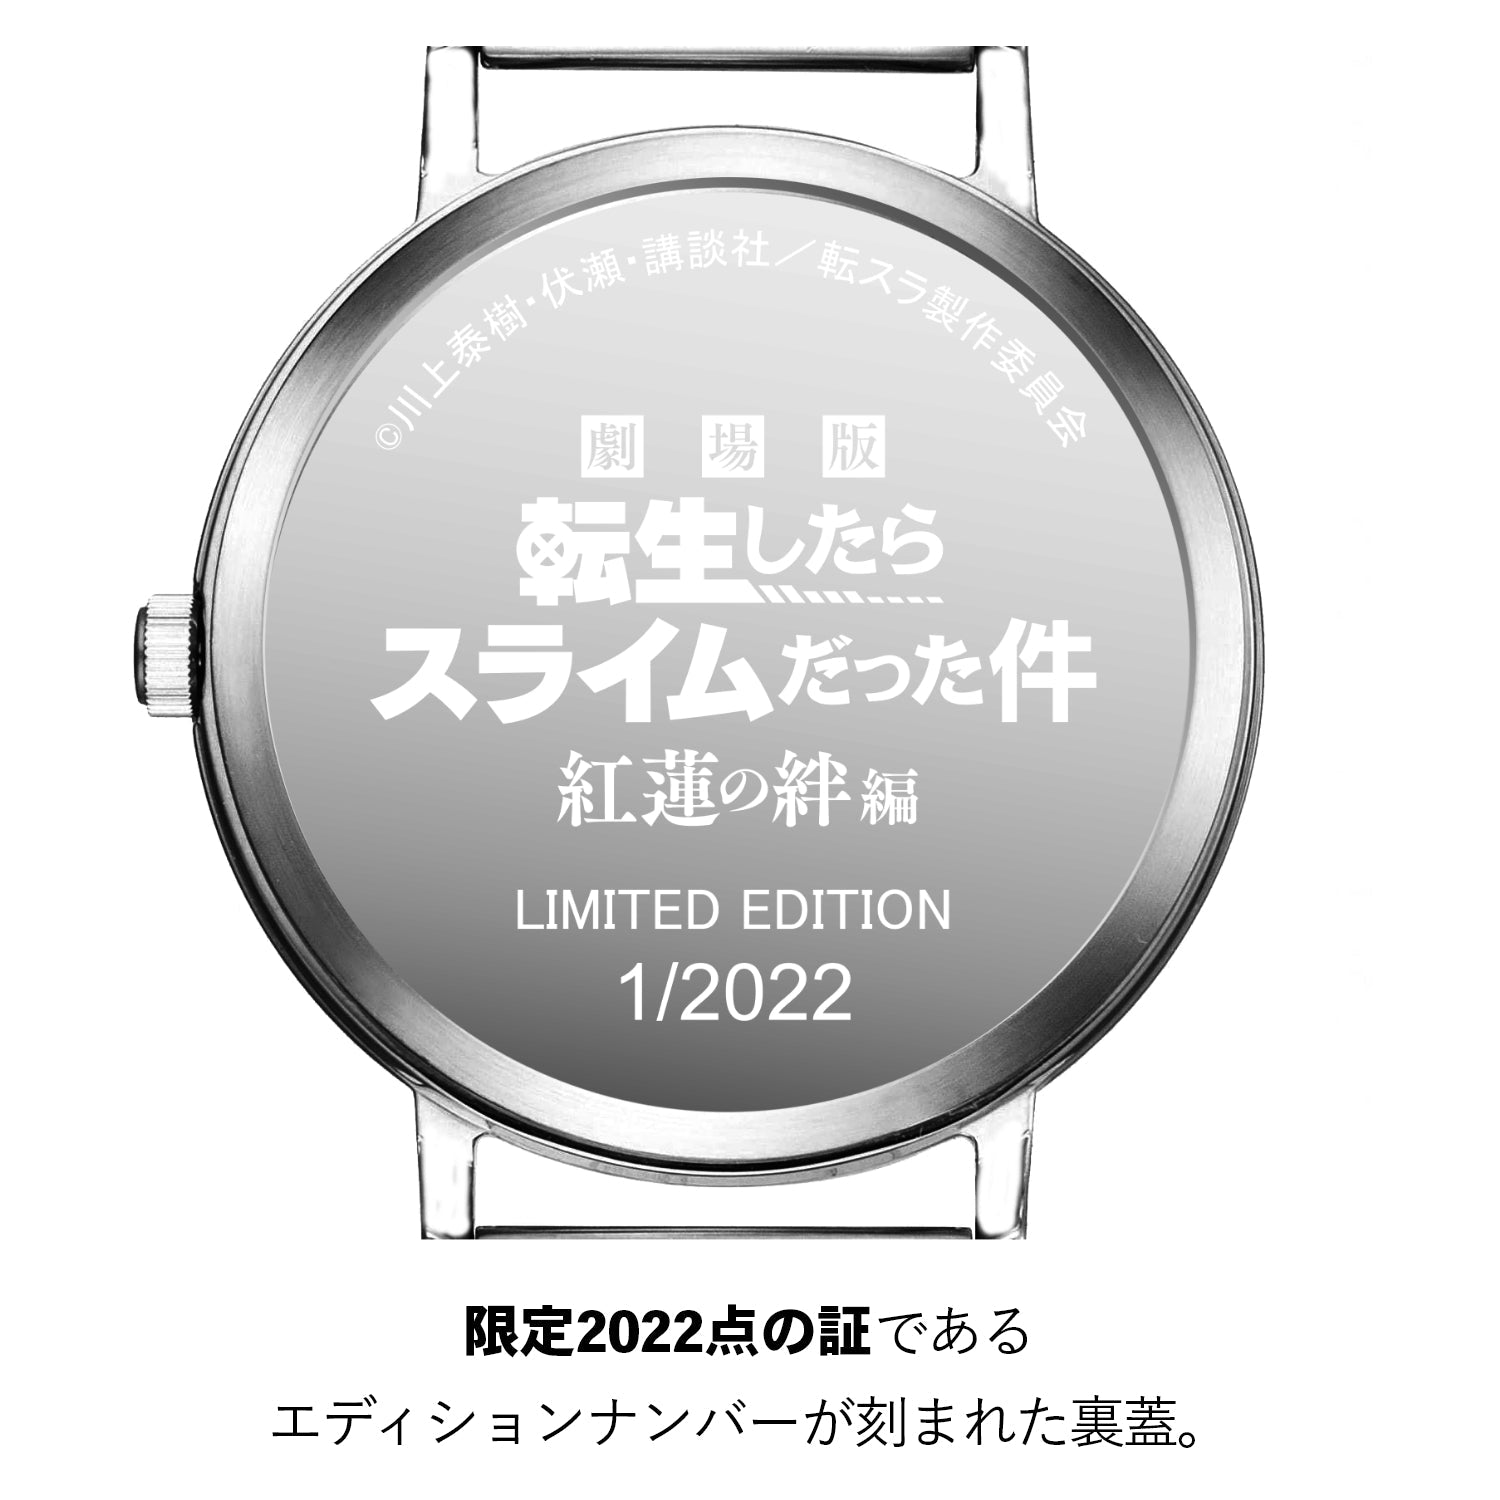 「劇場版 転生したらスライムだった件 紅蓮の絆編」オフィシャルソーラー腕時計 ミリム シルエット - 公式通販サイト「アニメコレクション/Anime Collection」